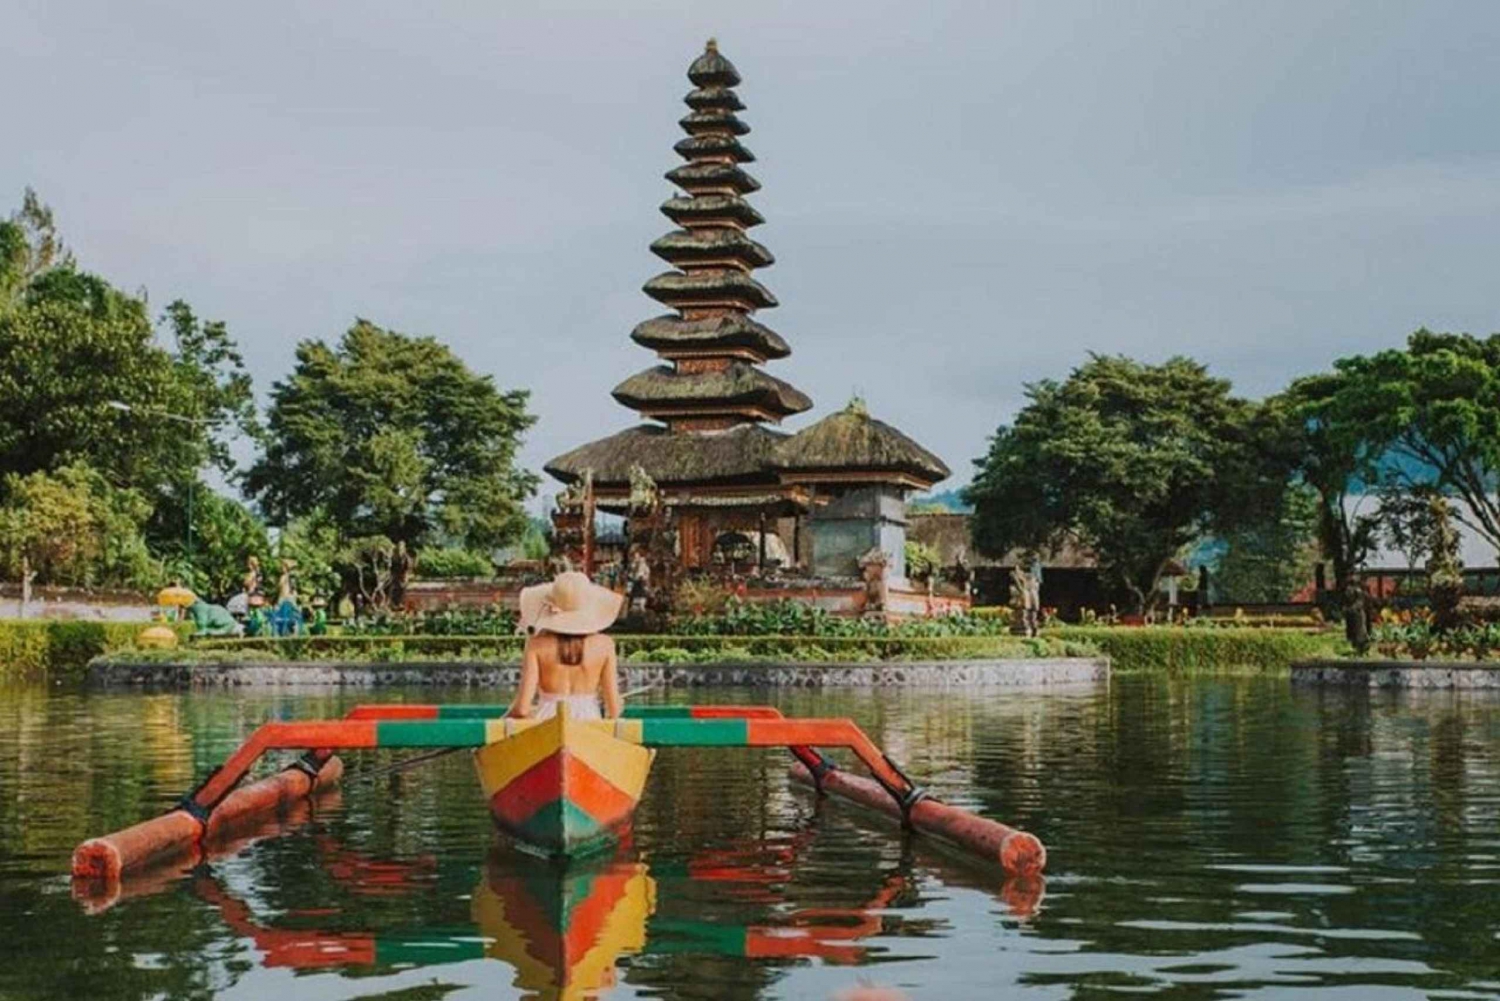 Bali: Ulundanu Temple, Rice Terrace & Tanah Lot Sunset Tour